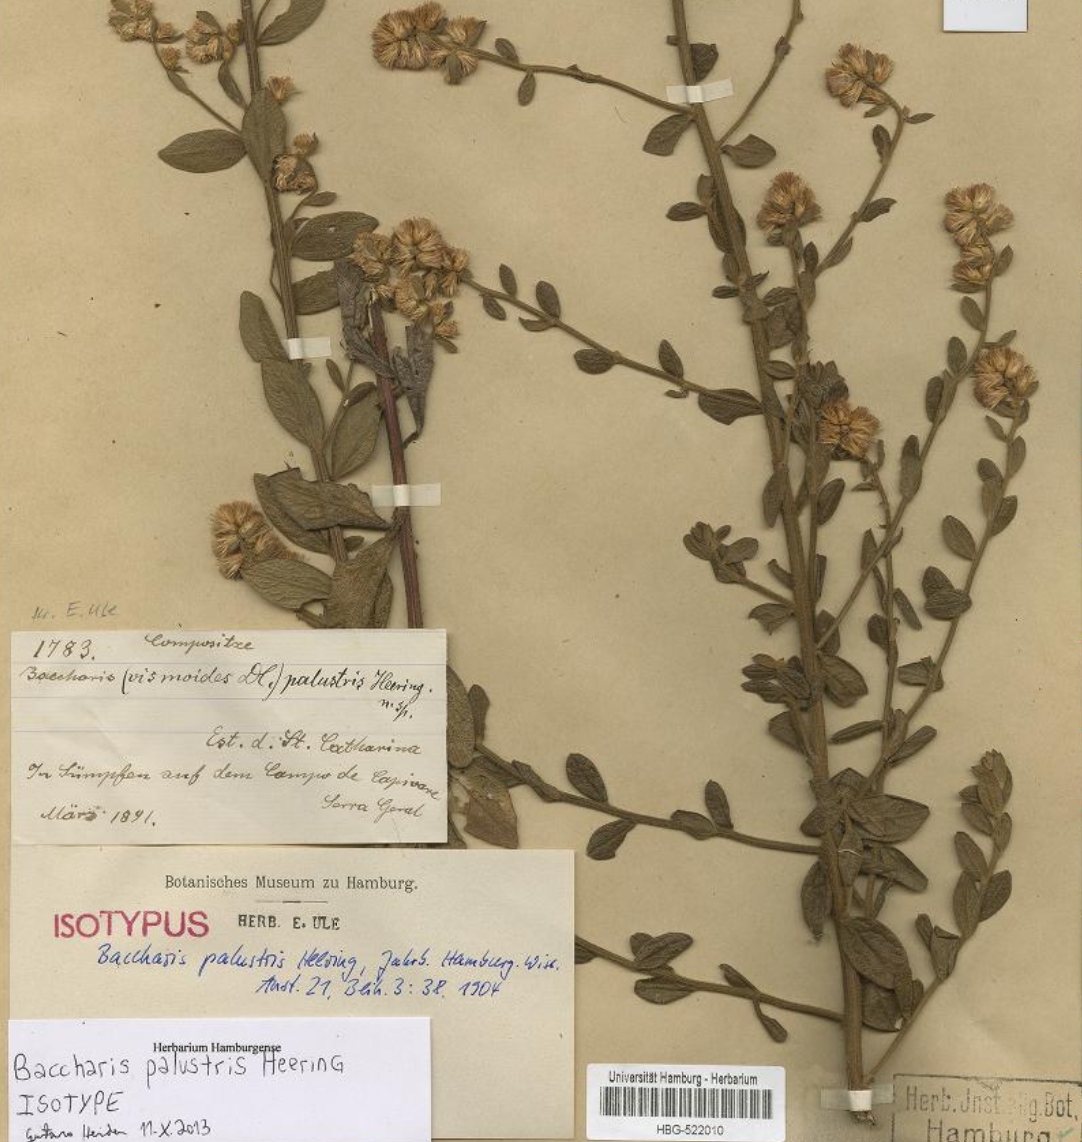 Type specimen of Baccharis palustris Heering